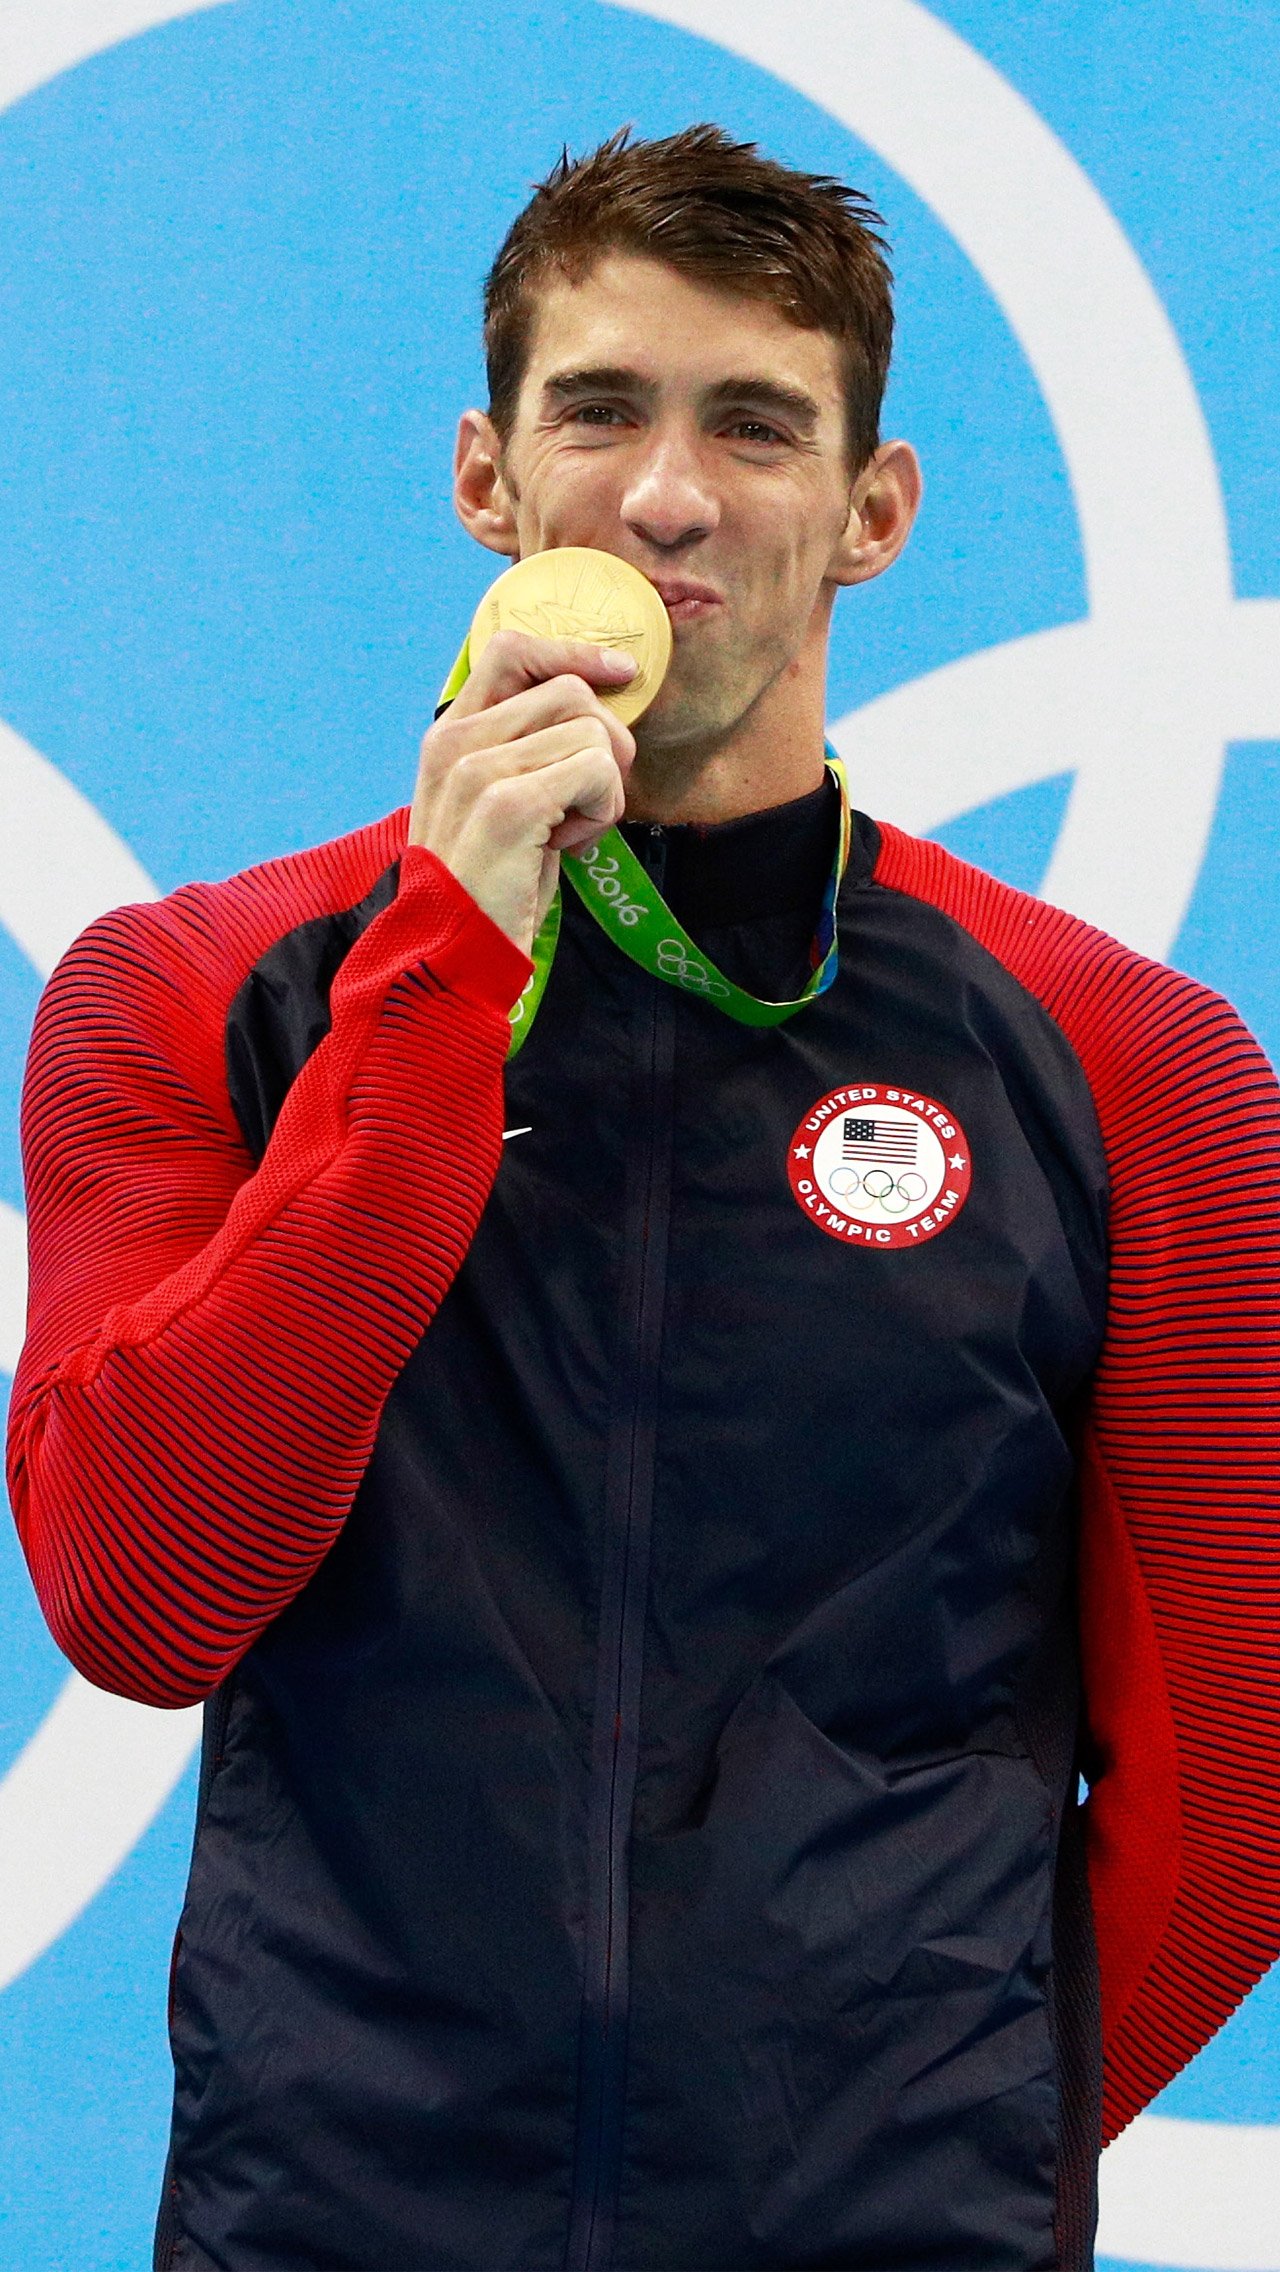 В списке самых титулованных спортсменов в истории Латынина на втором месте после американского пловца Майкла Фелпса — 23-кратного олимпийского чемпиона.